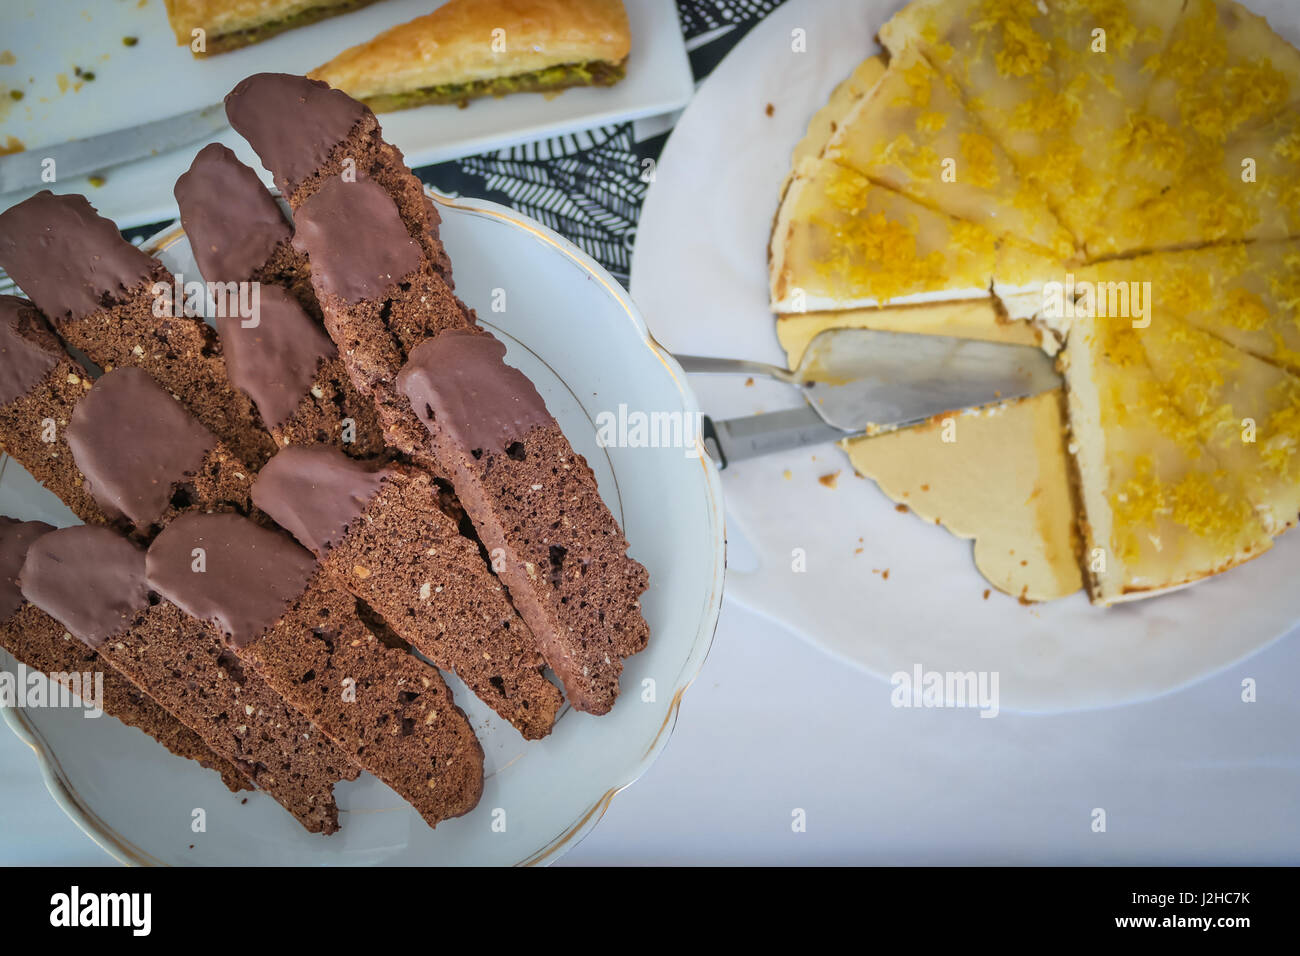 Tabella di dessert con biscotti al cioccolato e cheesecake su bianco che serve piatti Foto Stock